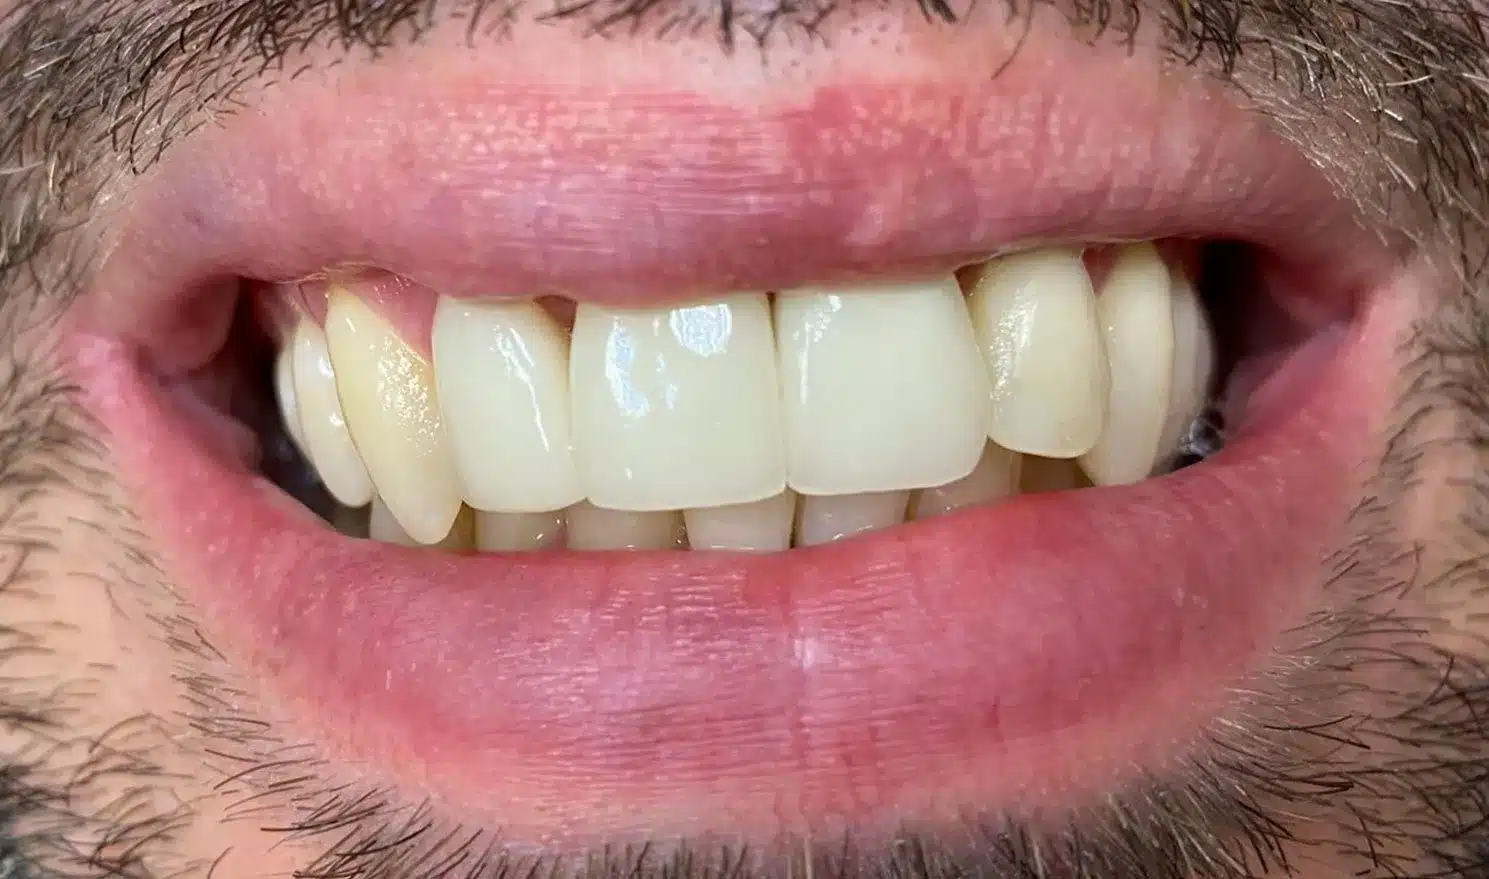 Standard Dental Implants - After